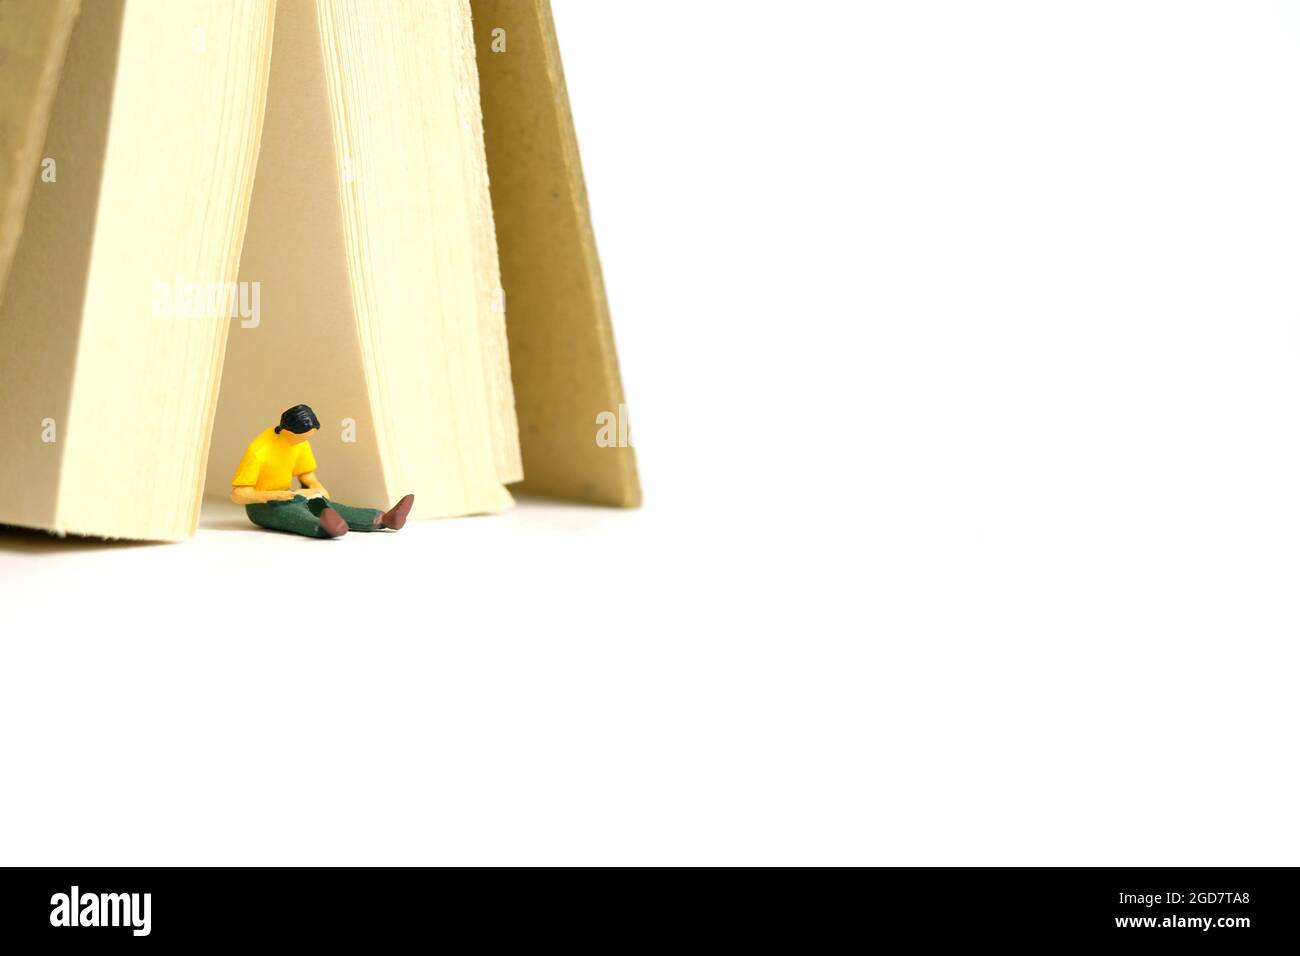 Foto di personaggi giocattolo in miniatura. Uno studente di uomini seduto sotto la tenda del libro, isolato su sfondo bianco. Foto immagine Foto Stock